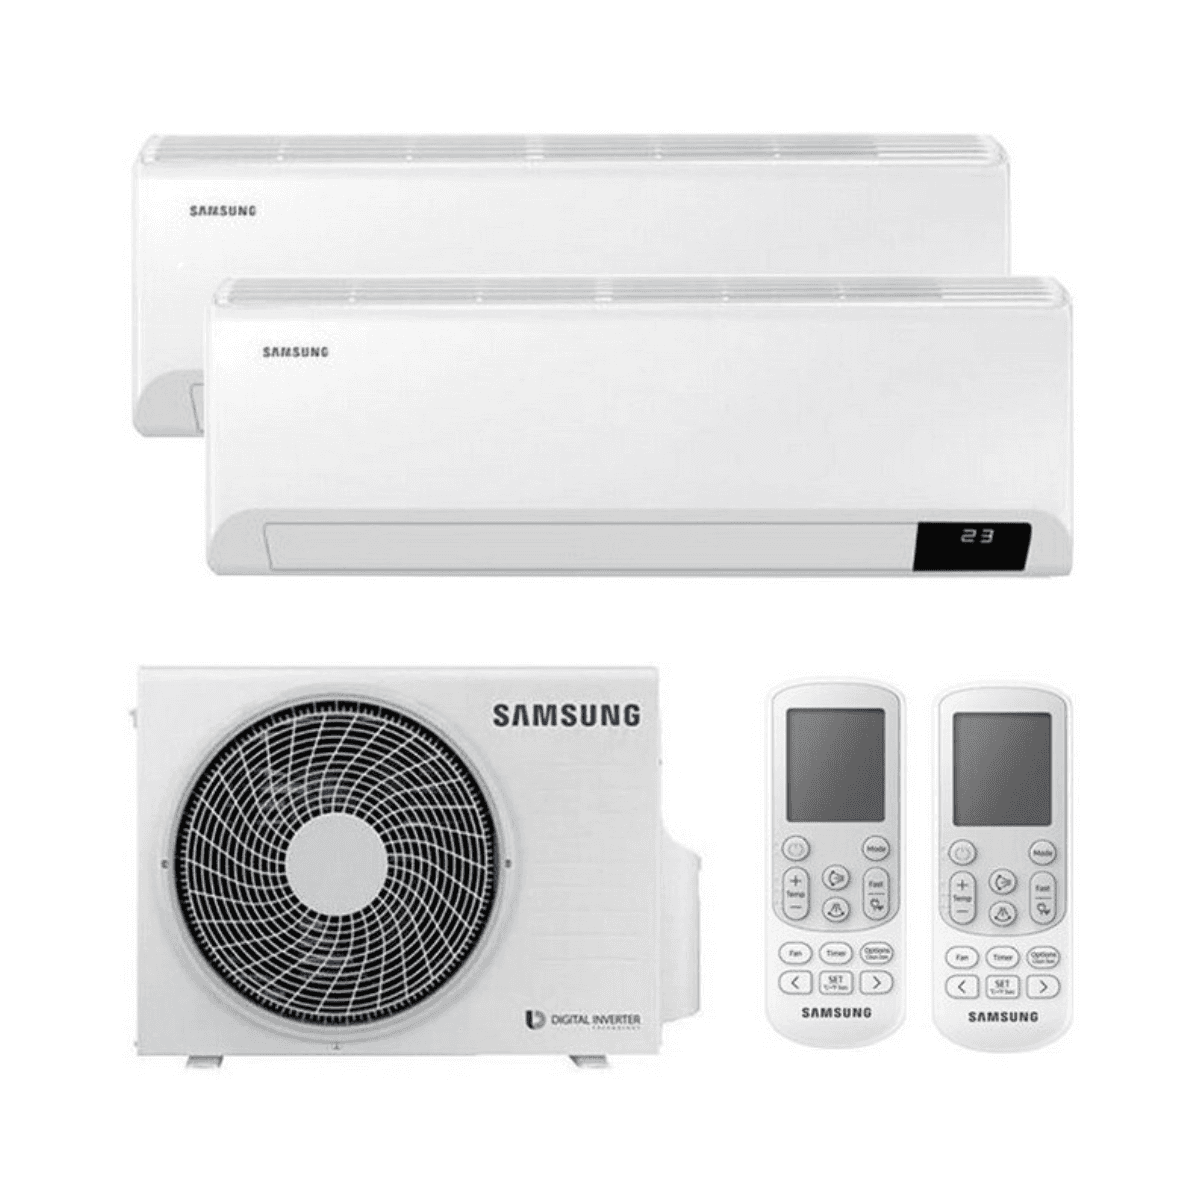 Multisplit-Klimaanlage 2x1 Samsung Wind Free Comfort AR09 + AR12 2,5kW + 5,0kW mit der Referenz KITSAMWINDFREE09+18 von der Marke SAMSUNG